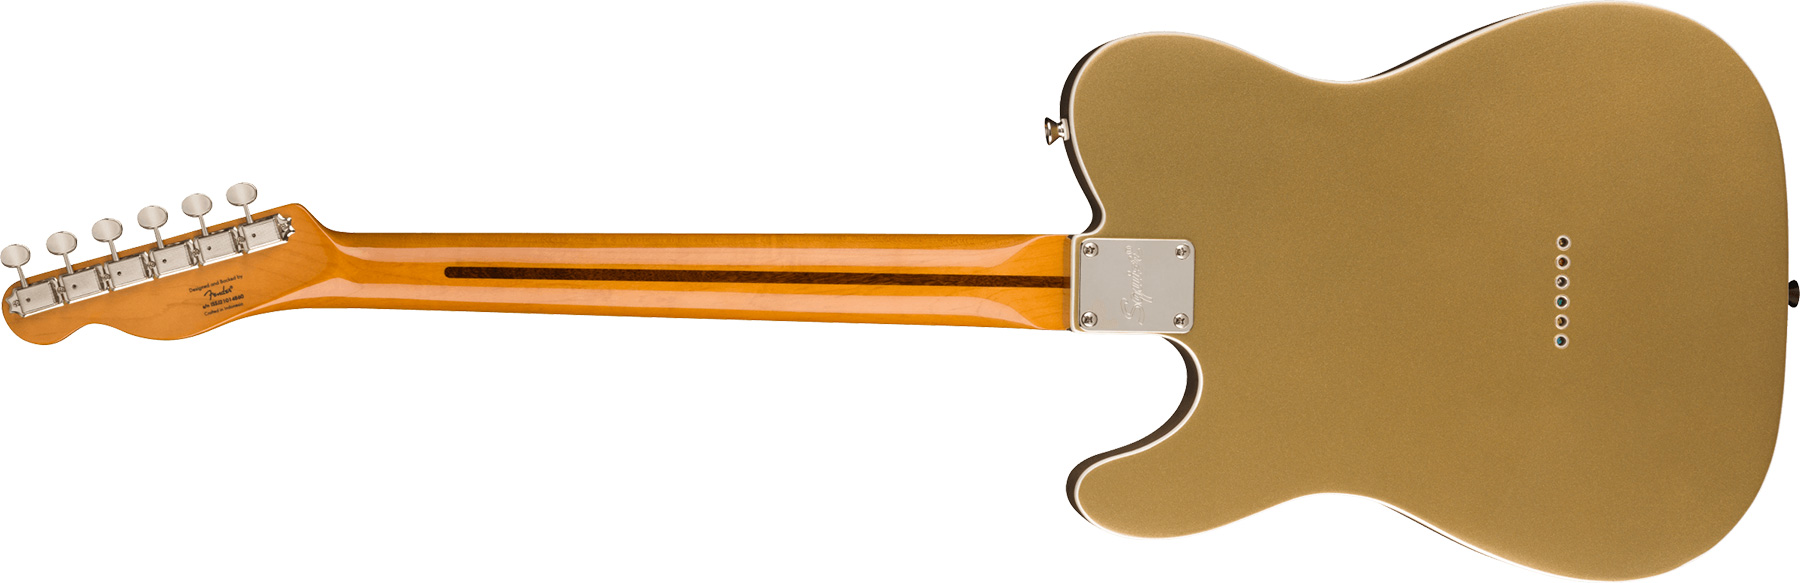 Squier Tele '60s Thinline Parchment Pickguard Classic Vibe Fsr 2s Ht Mn - Aztec Gold - Televorm elektrische gitaar - Variation 1